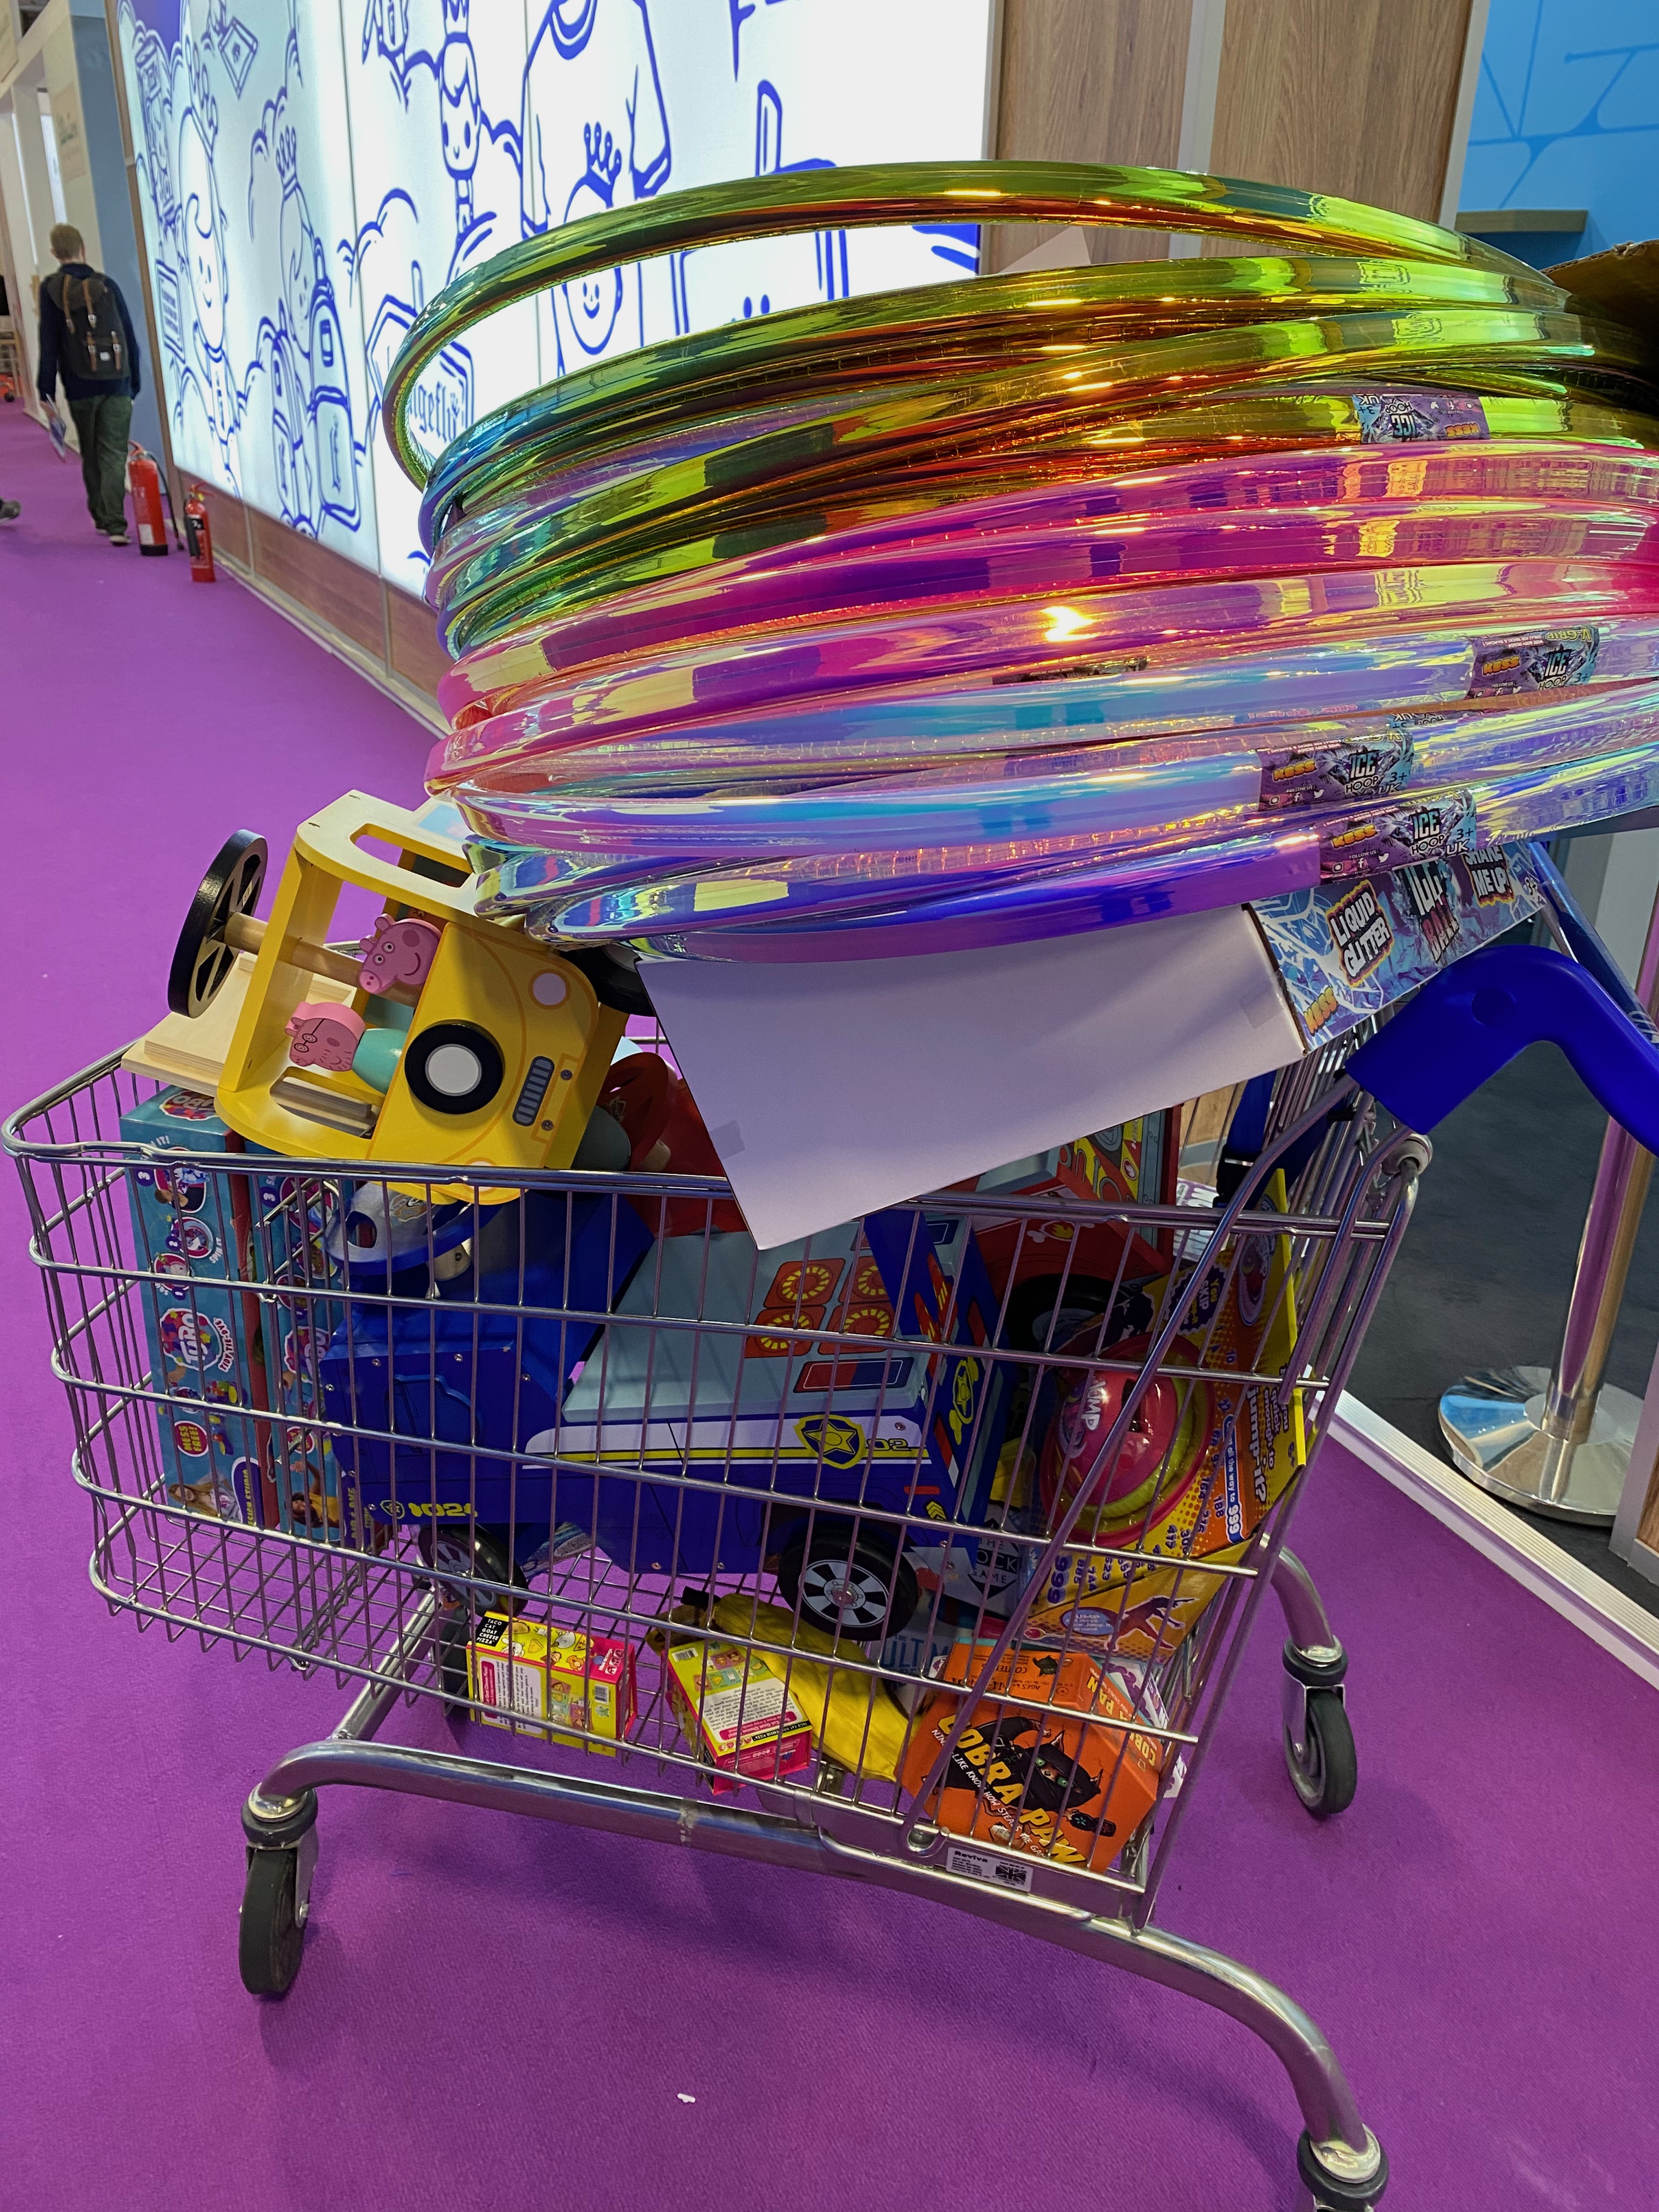 Shopping cart full of children's toys